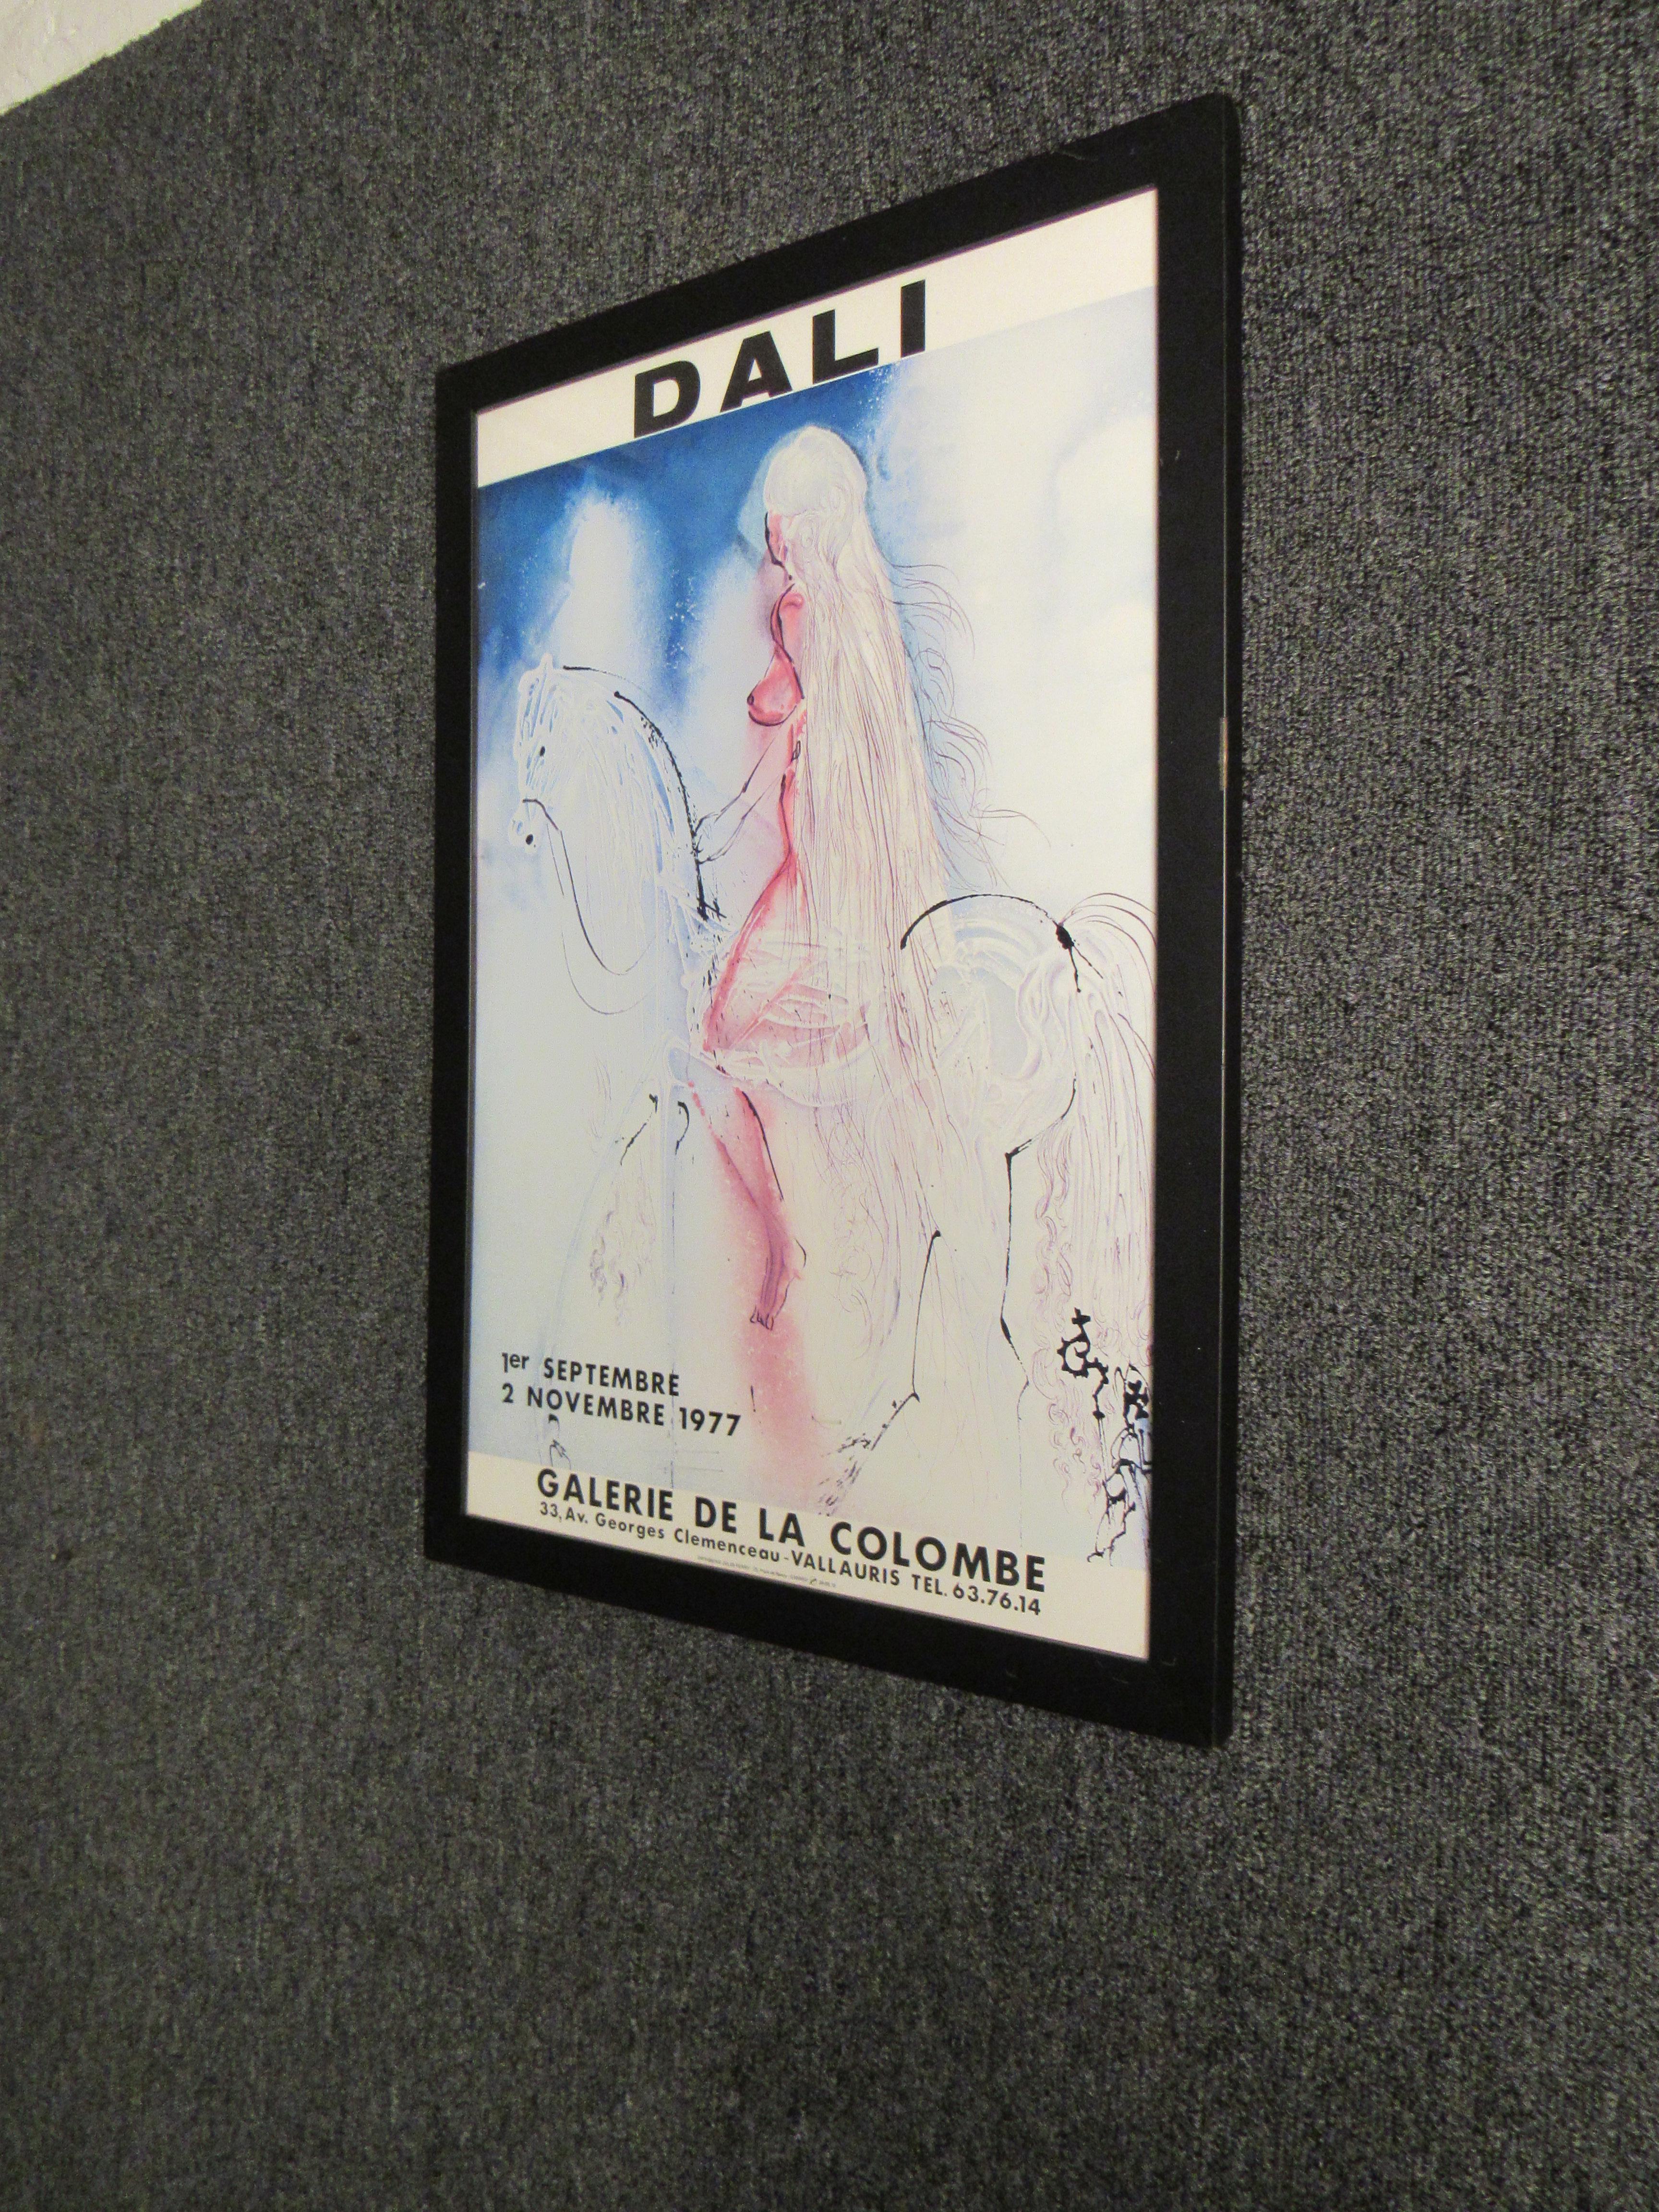 Wenn es um wahre künstlerische Genialität geht, werden nur wenige Namen häufiger genannt als der von Salvador Dali. Als unbestrittener Meister des Surrealismus des 20. Jahrhunderts ist Dalís Werk in fast allen wichtigen Kunstmuseen der Welt zu